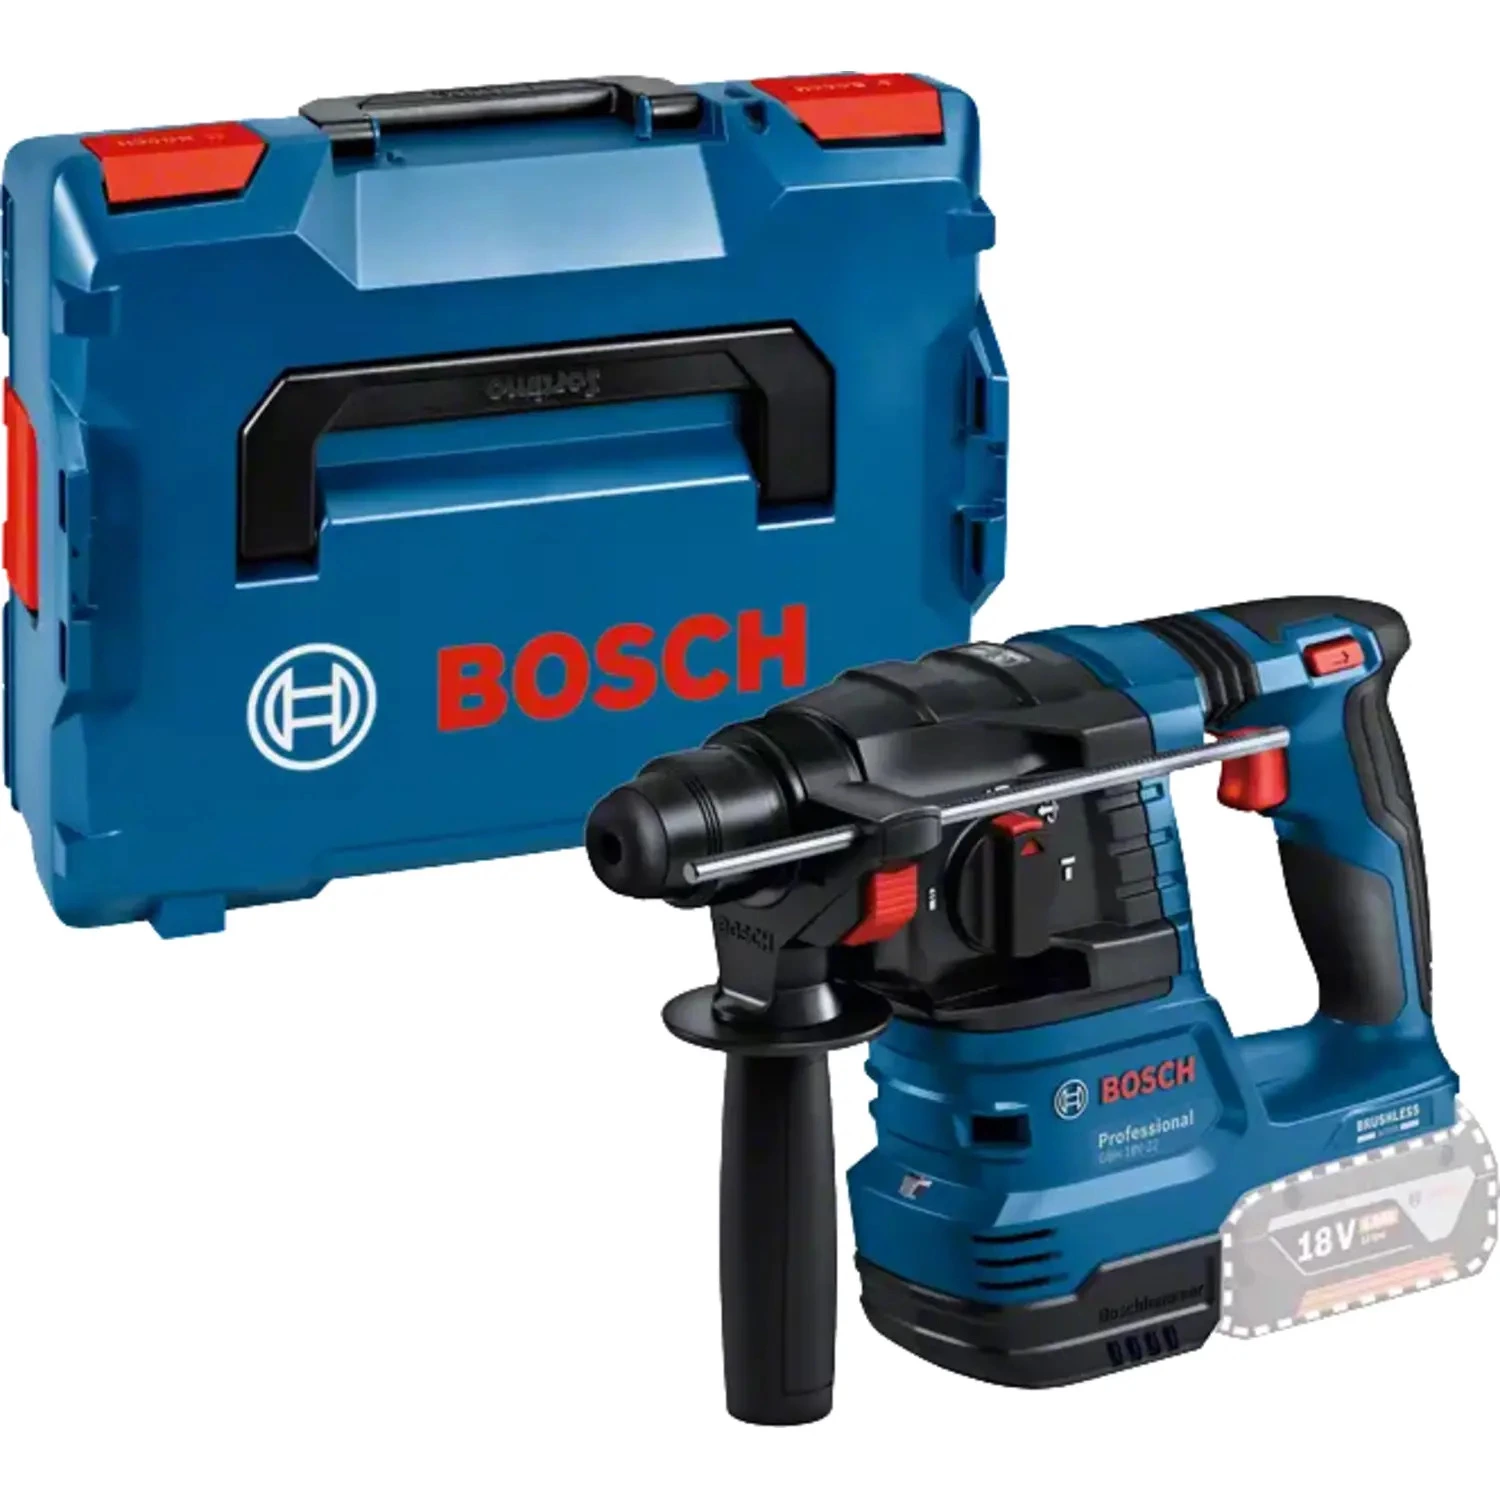 Bosch GBH 18V-22 18V accu boorhamer body in L-Boxx